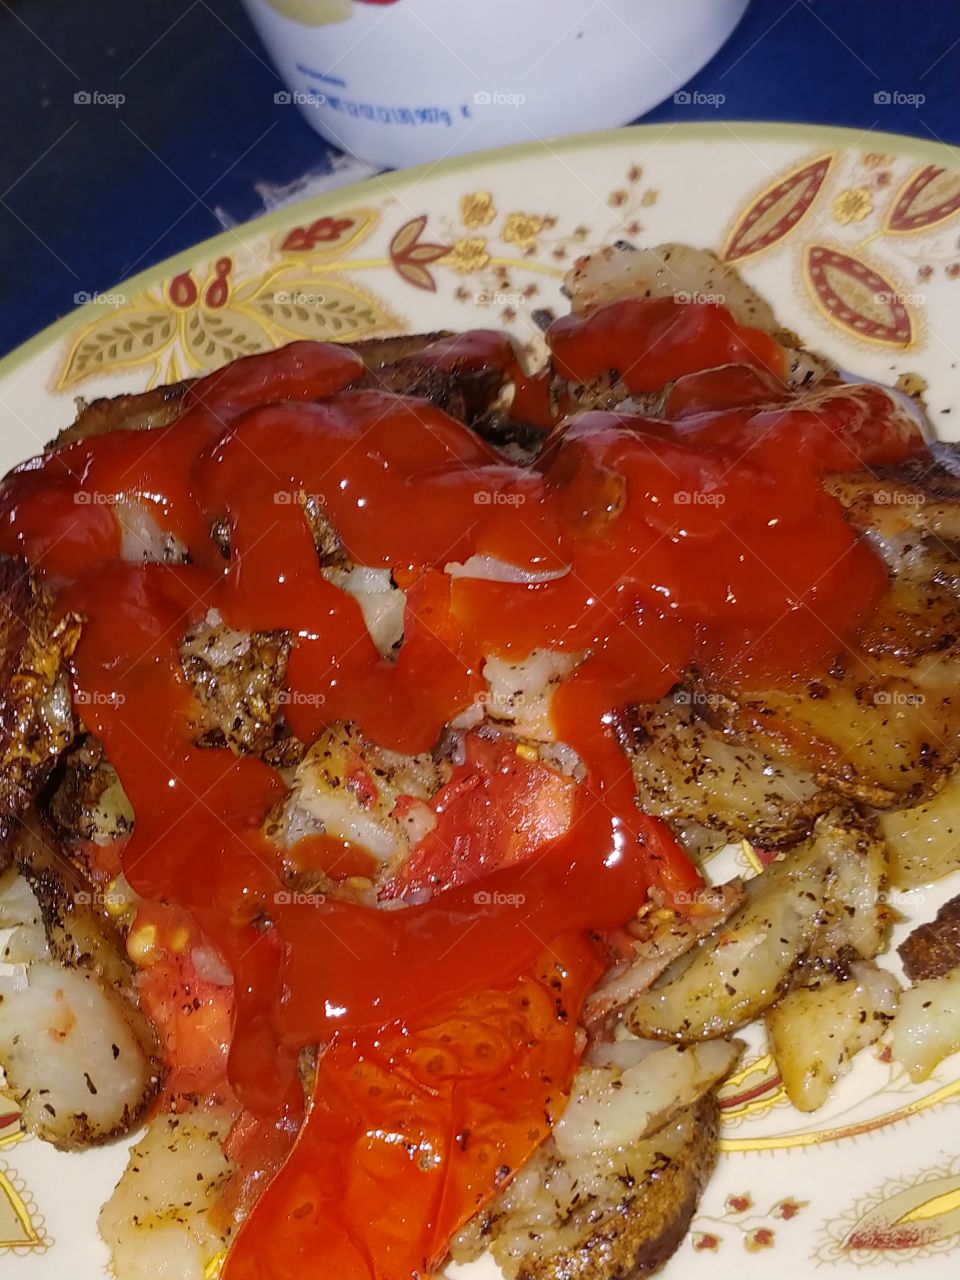 sauce red ketchup potatos fried/ tomato